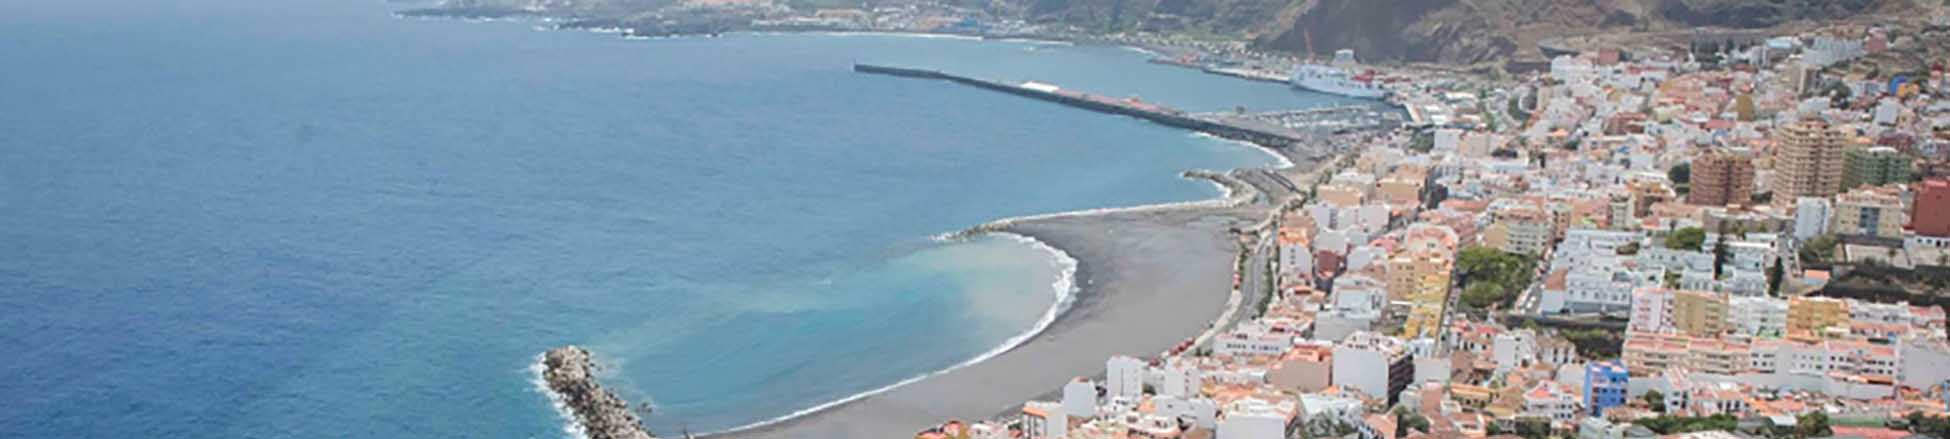 Imagen recurso del puerto de destino La Palma (S.C. de la Palma) para la ruta en ferry Tenerife (Los Cristianos) - La Palma (S.C. de la Palma)